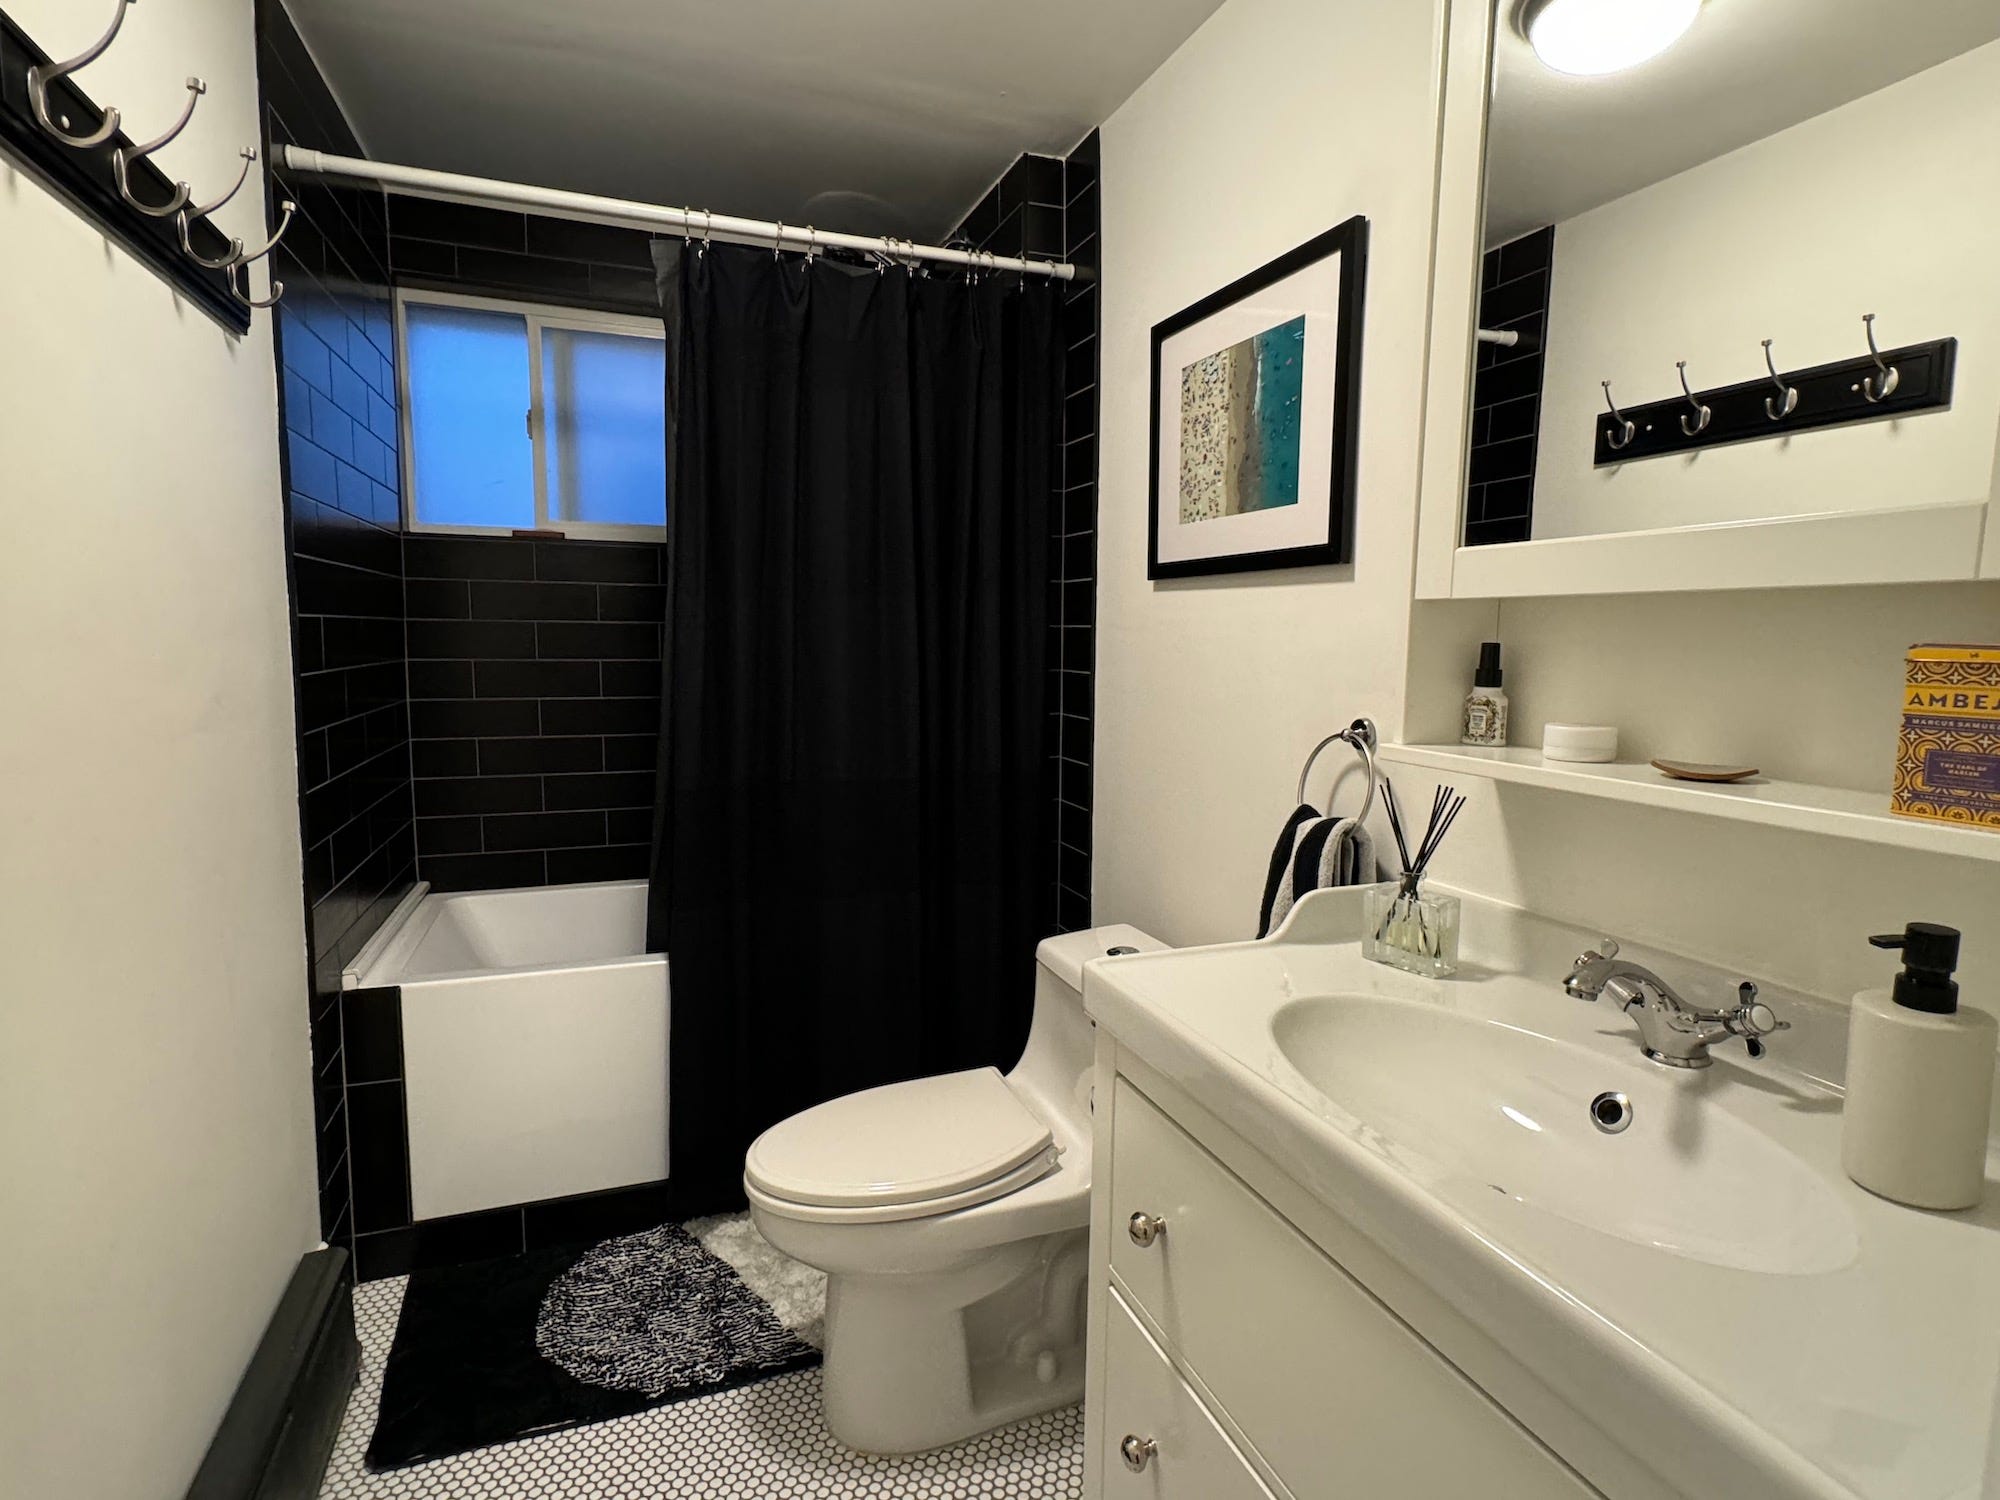 Ein Badezimmer mit einer schwarz gefliesten Badewanne und einer weißen Toilette, einem Waschbecken und einem Waschtisch mit Diffusor und Seifenspender darauf.